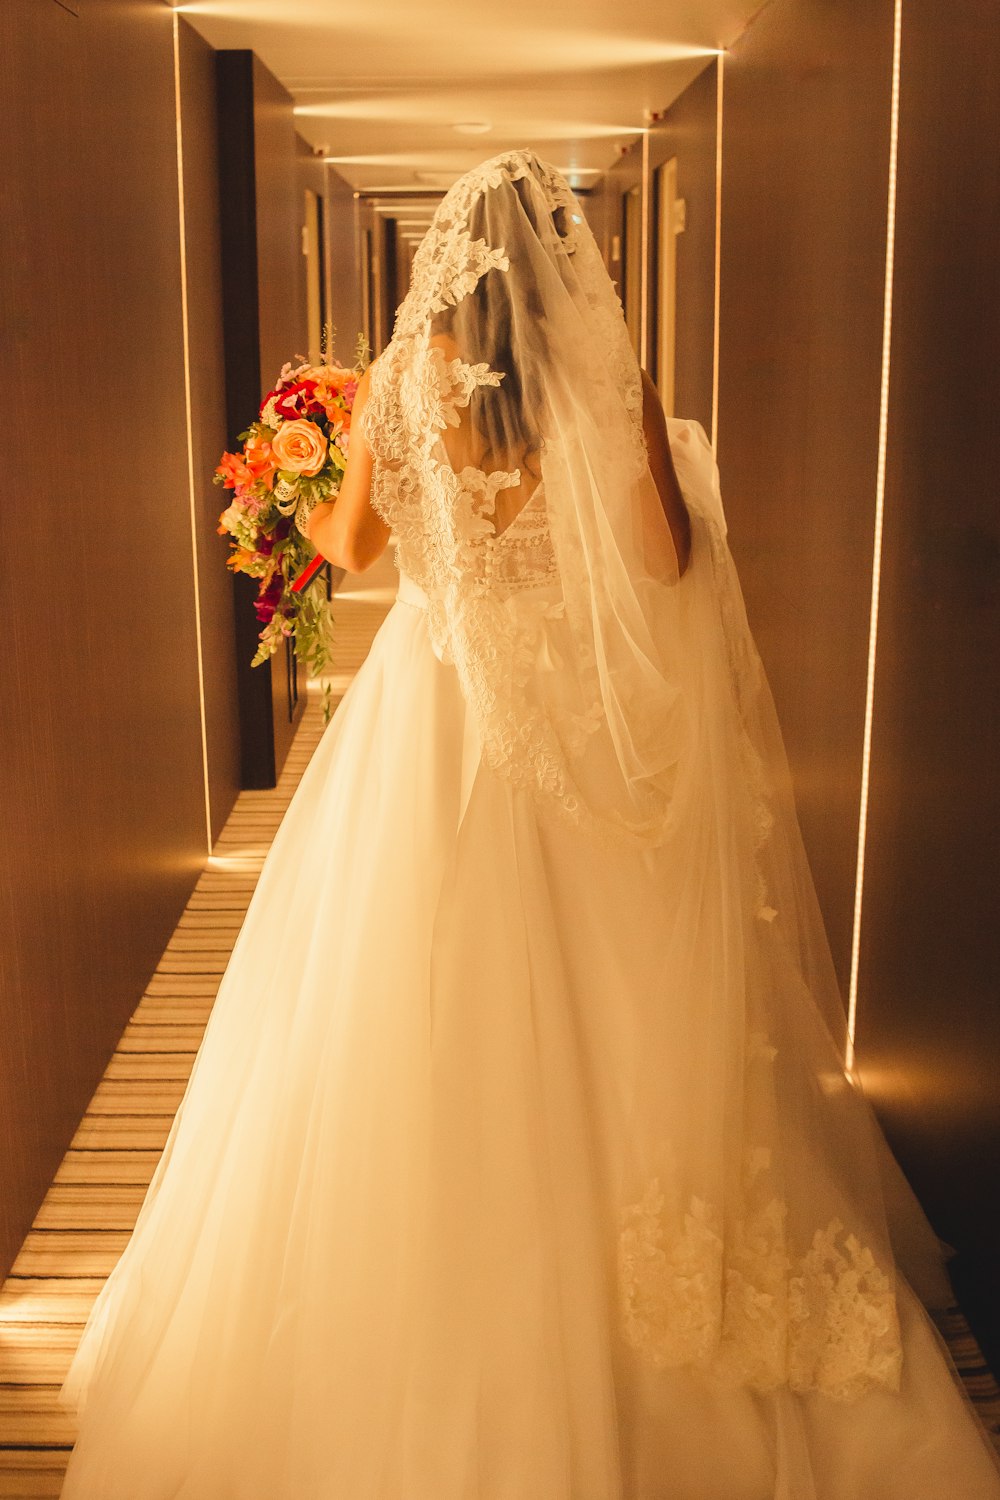 a woman in a wedding dress walking down a hallway